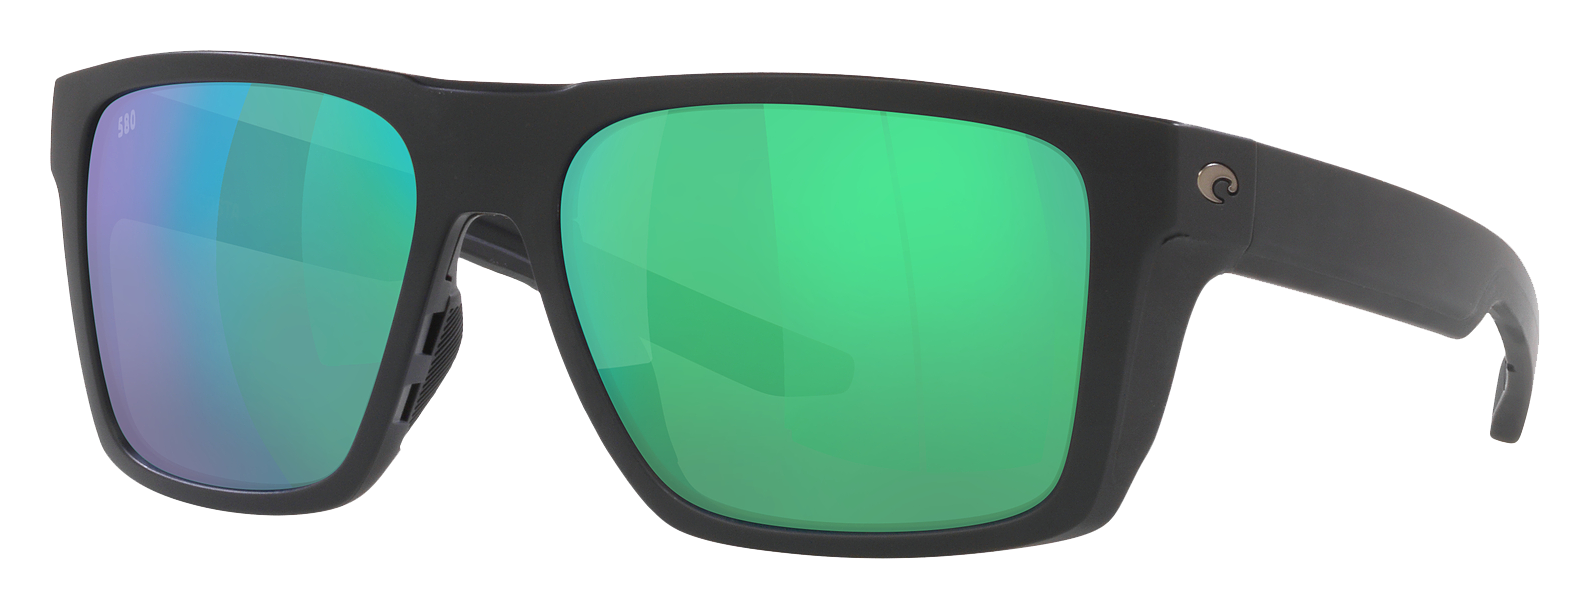 Costa Del Mar Lido 580G Glass Polarized Sunglasses - Matte Black/Green Mirror - Large